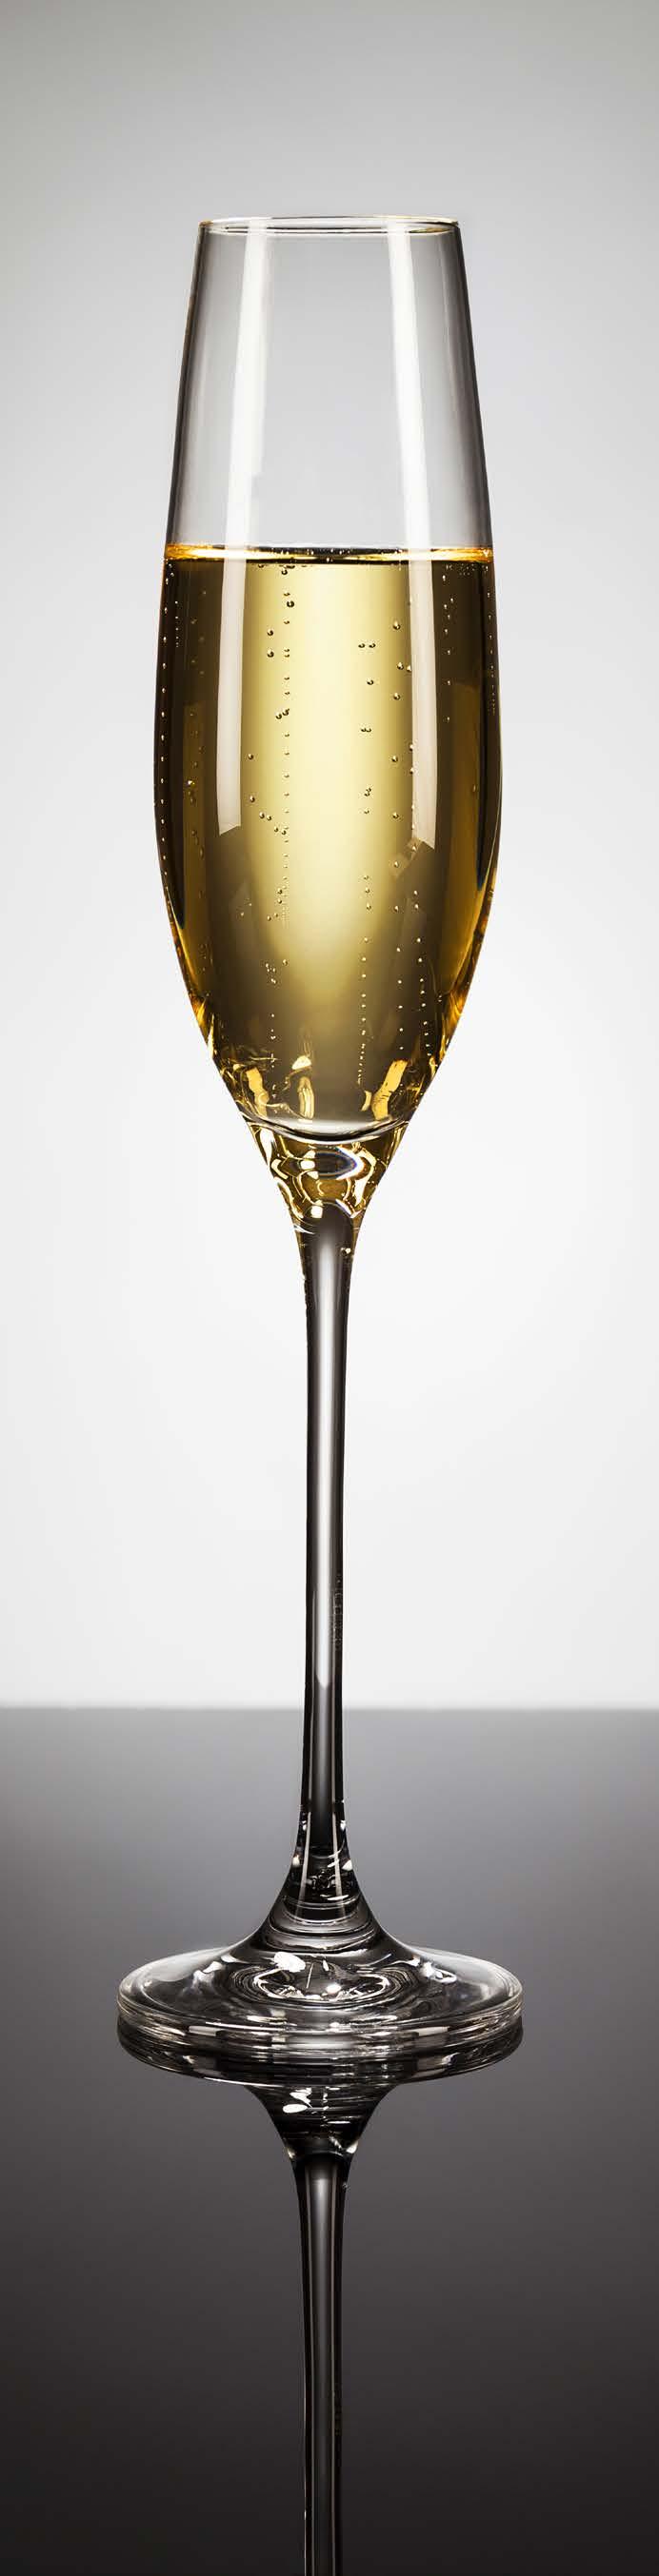 Consumo de vinhos espumantes e champanhe pode dobrar no Brasil Segundo pesquisa realizada pela TNS Global, em agosto de, constatou que o consumo de champanhe e vinhos espumantes pode dobrar no Brasil.